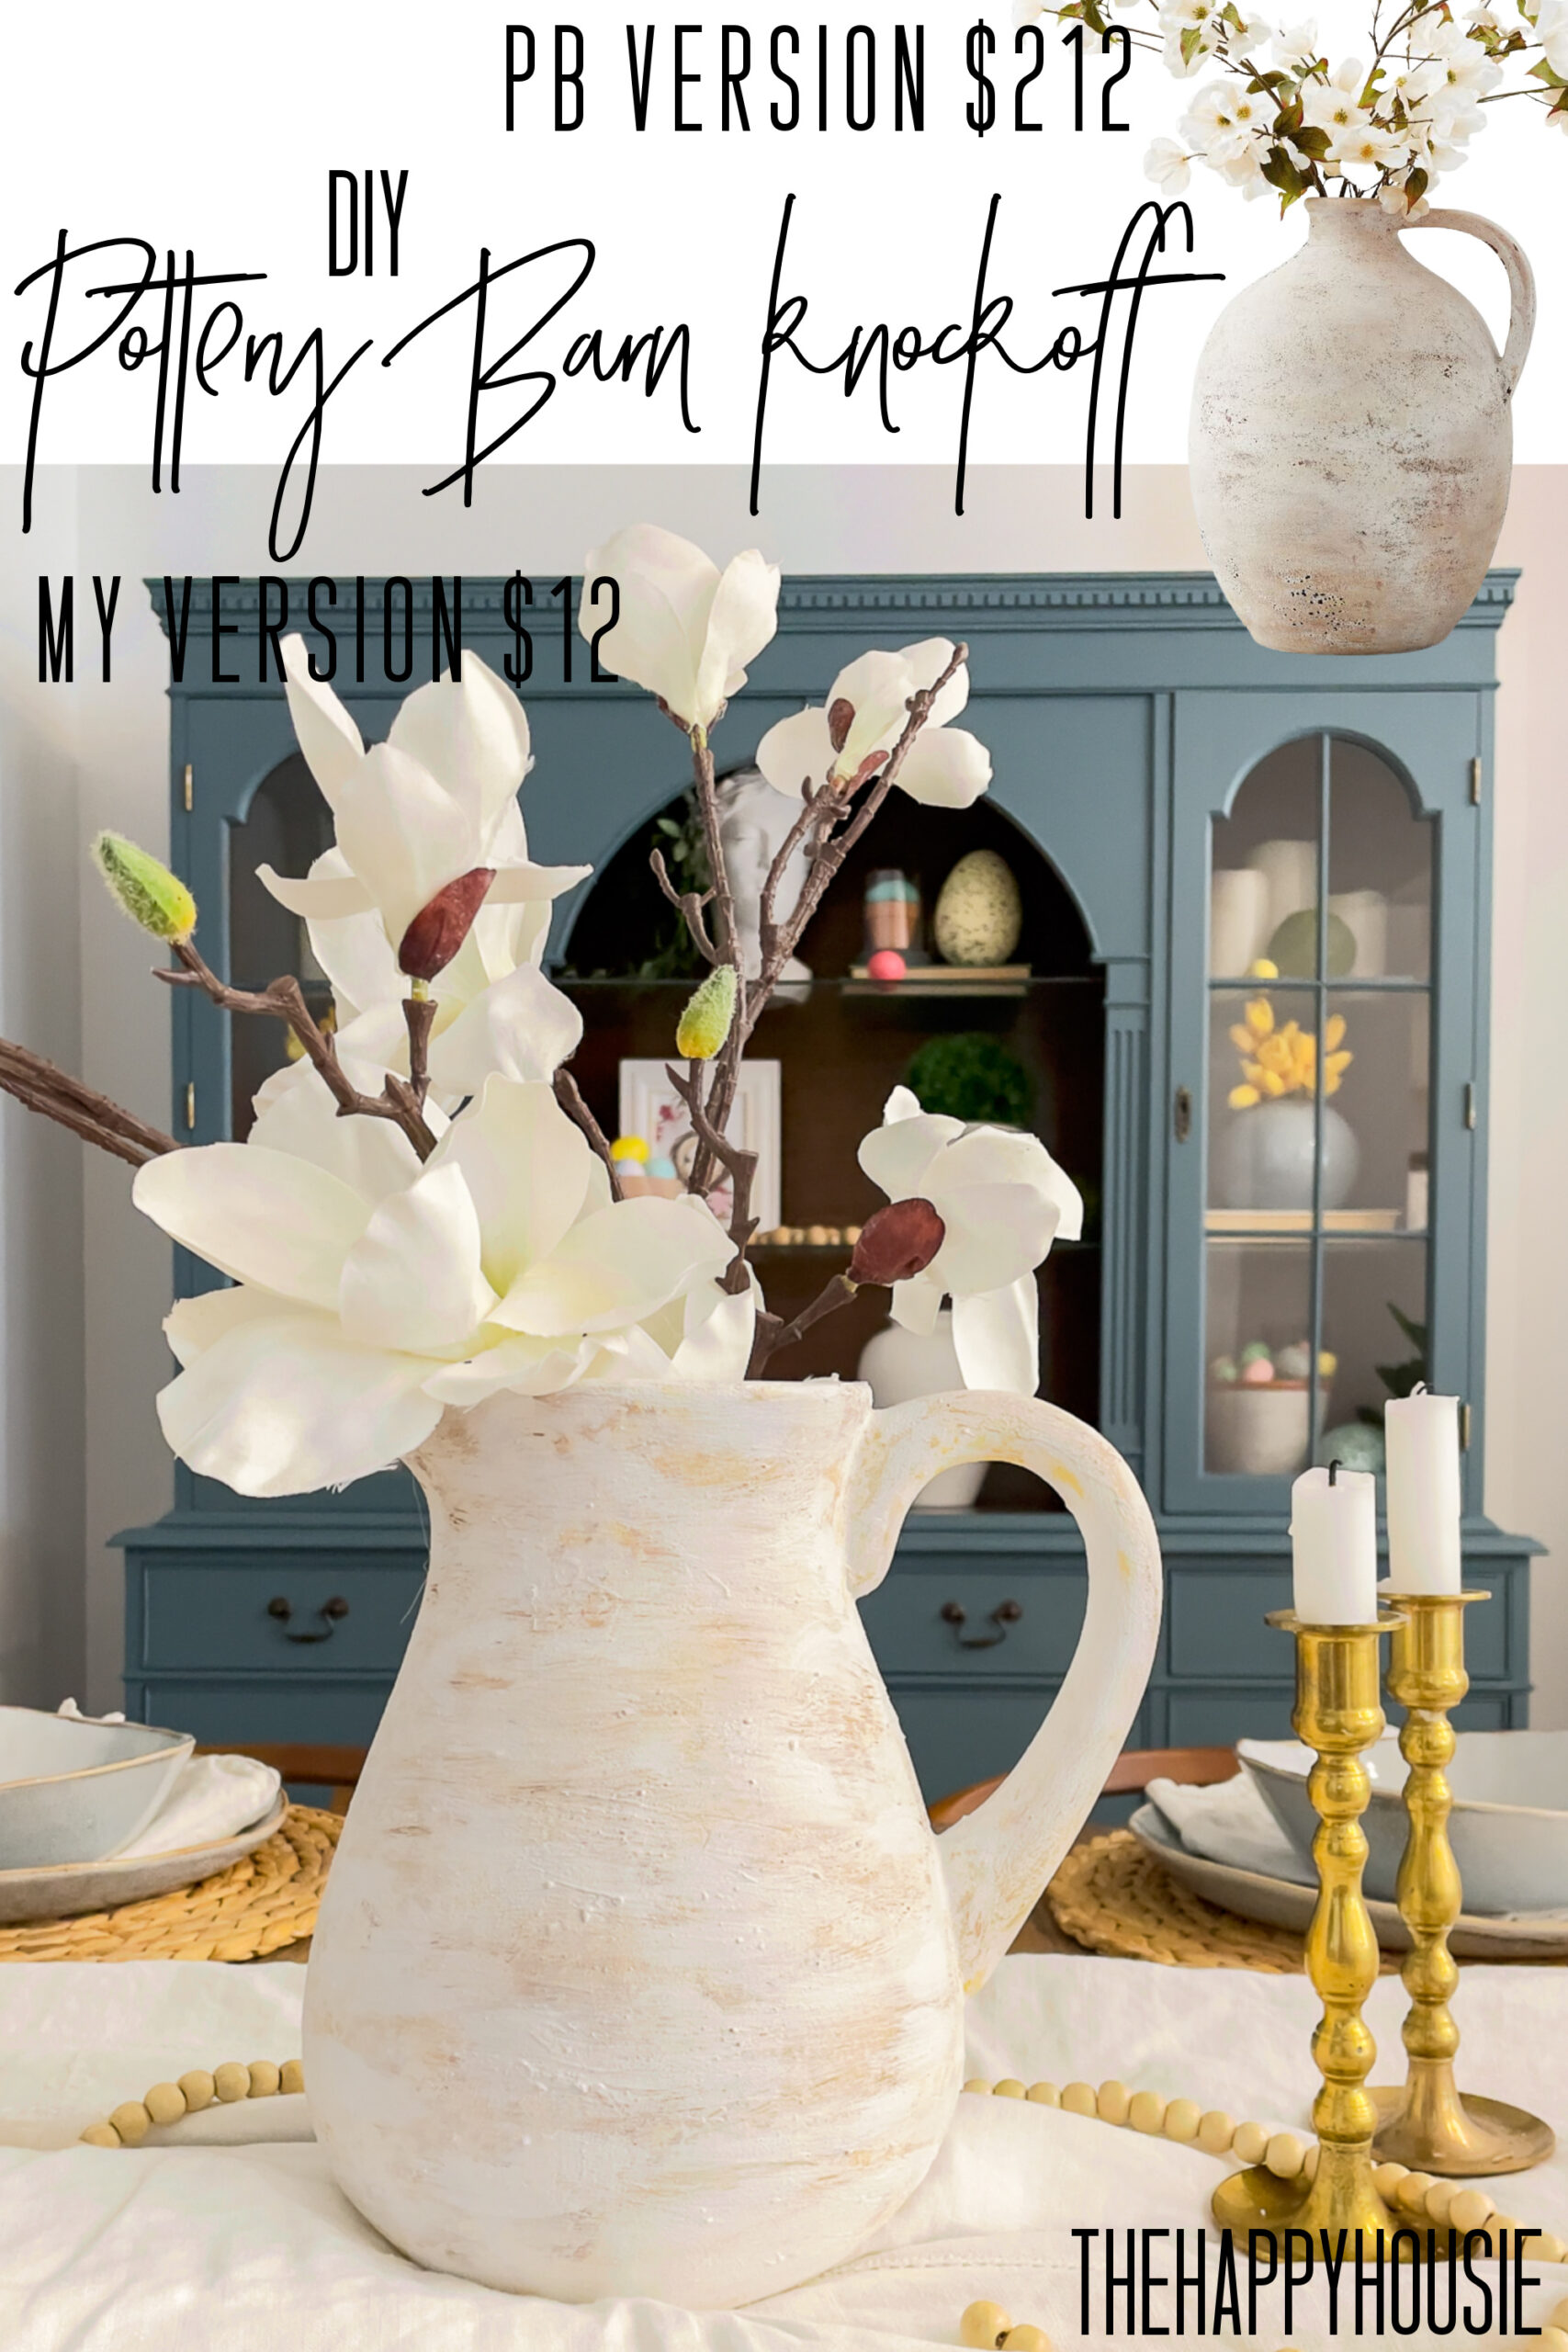 Stoneware pitcher - Cute home decor